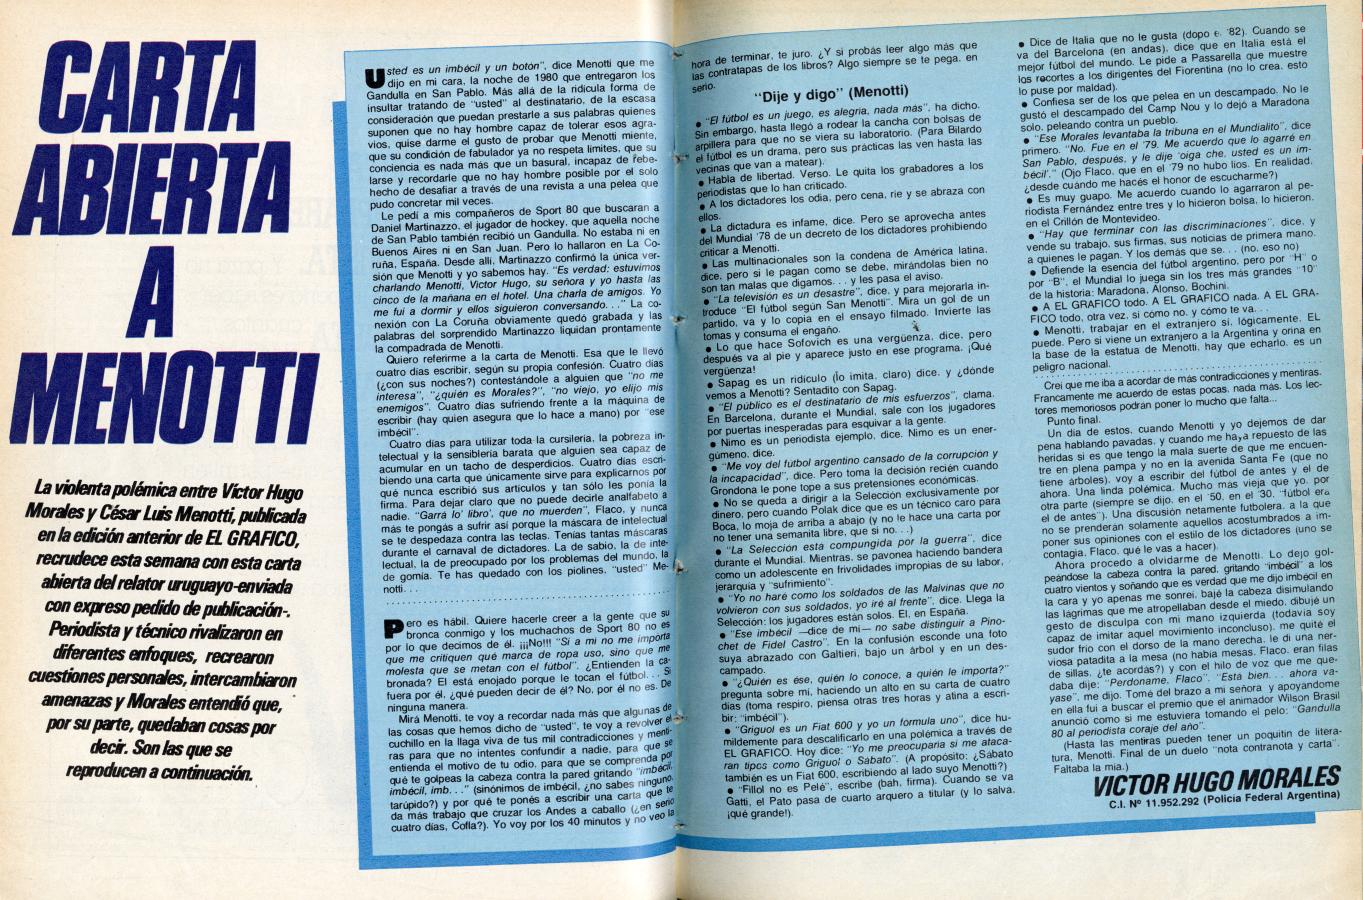 Imagen Victor Hugo Morales: "Carta Abierta a Menotti", 5 de febrero de 1985. 